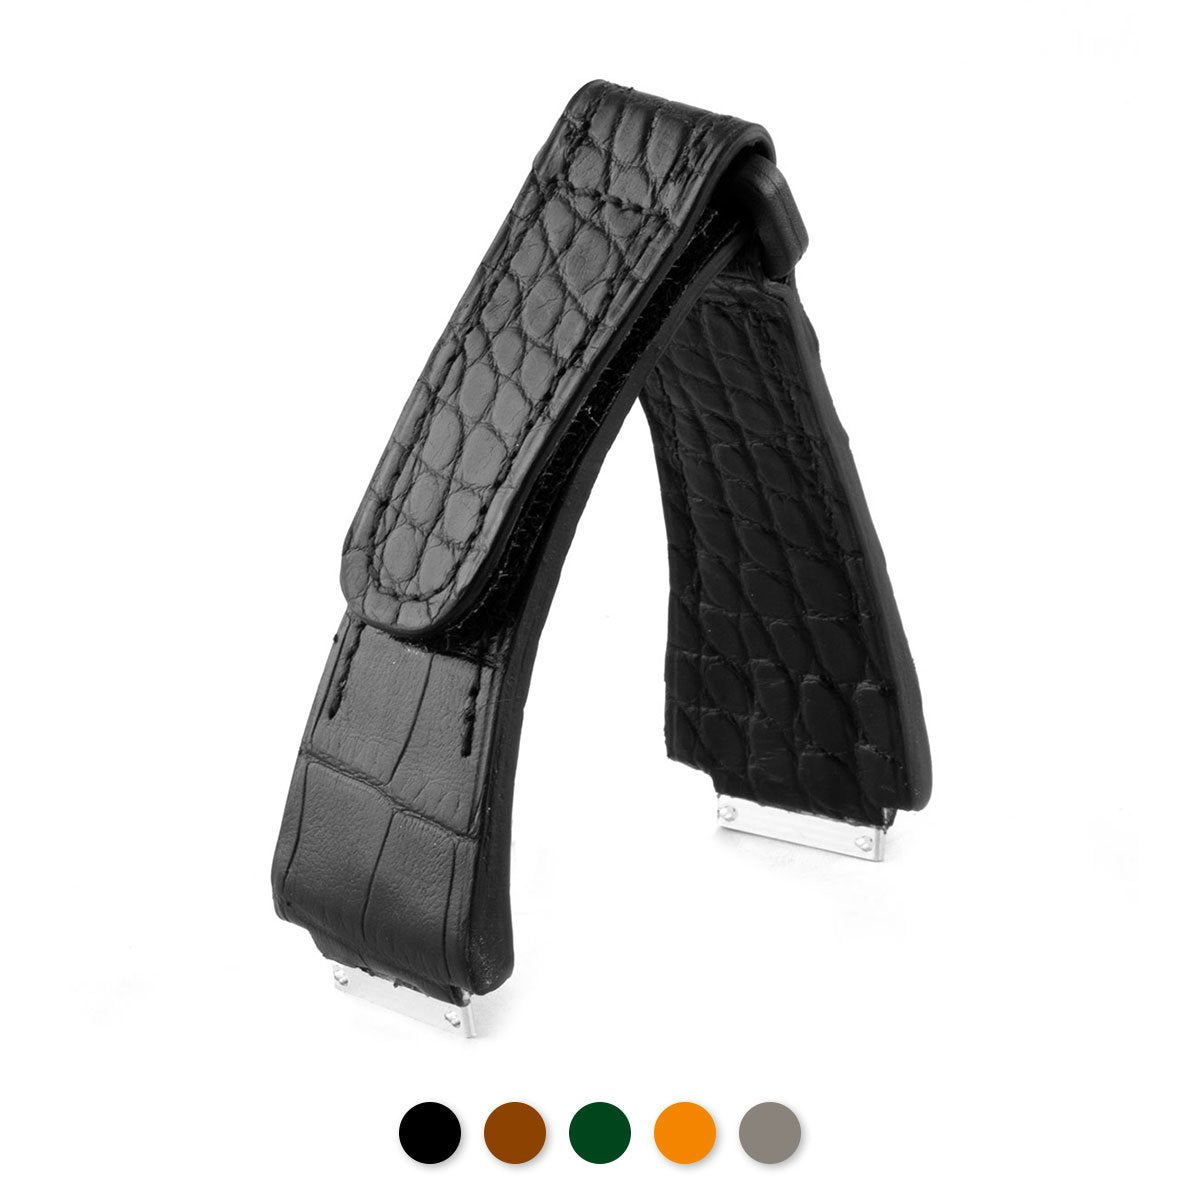 Richard Mille - Bracelet-montre cuir velcro - Alligator (noir, marron, vert, orange, gris) - watch band leather strap - ABP Concept -